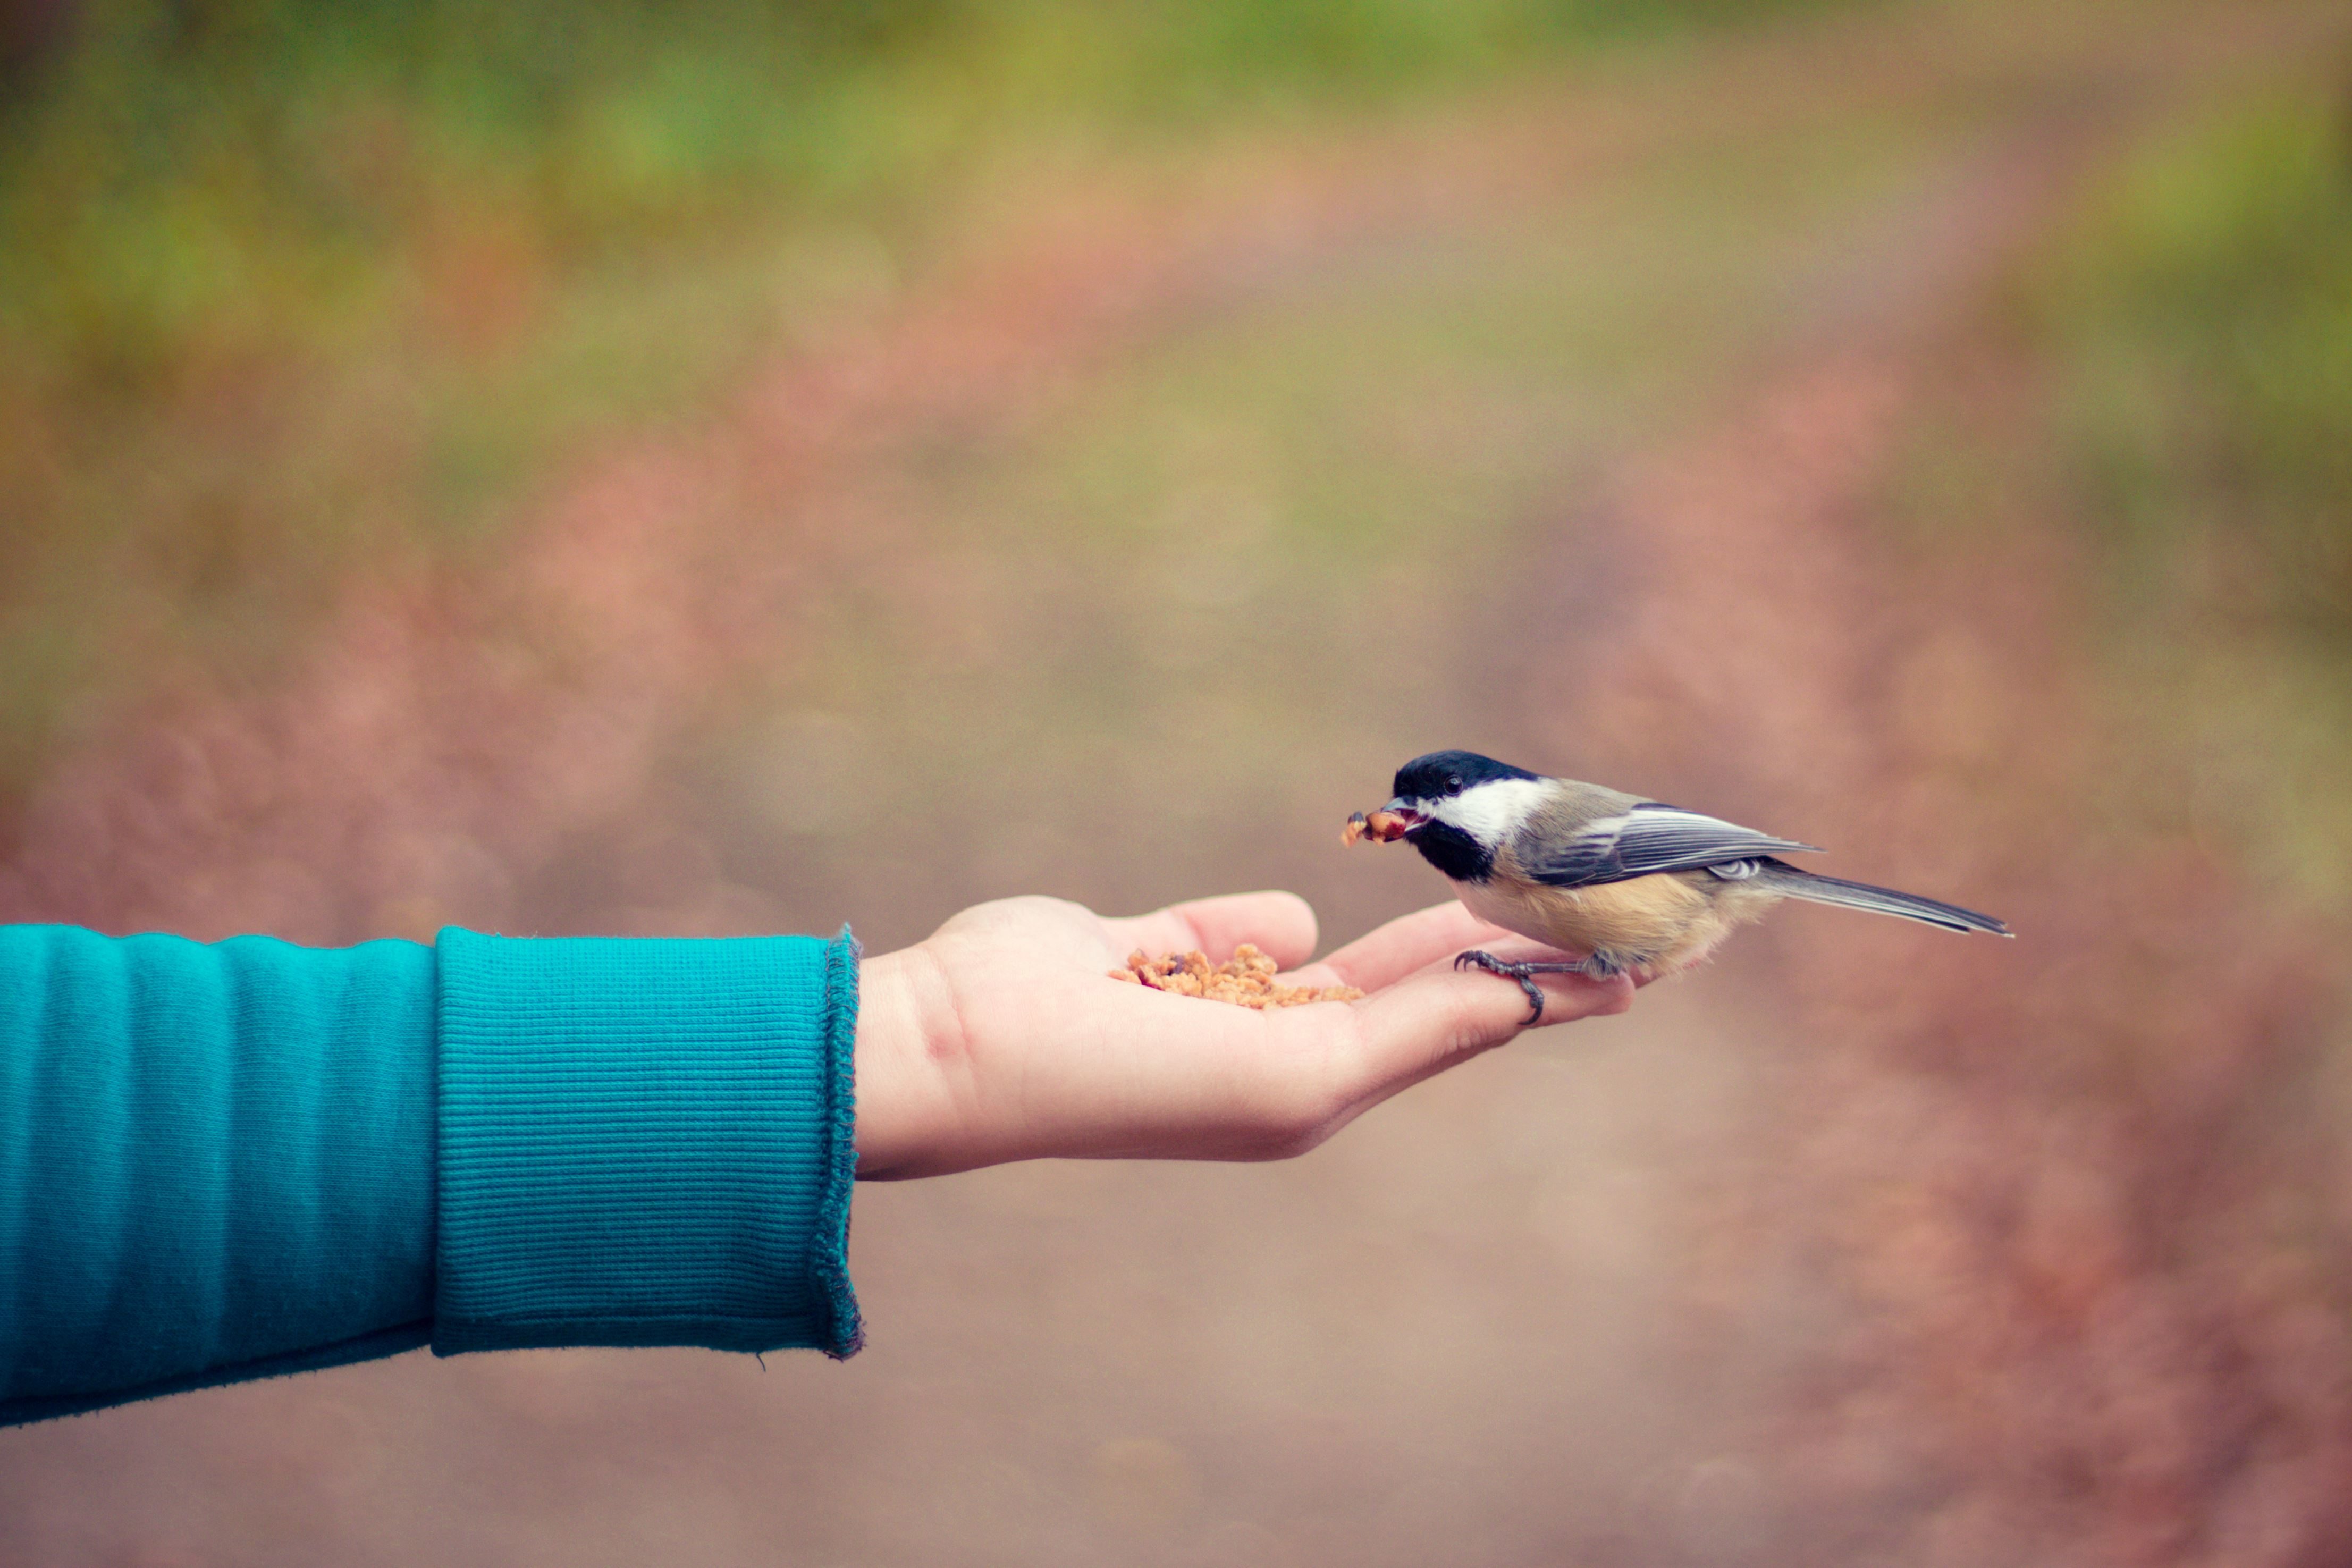 She likes birds. Птичка на руке. Птичка на ладони. Синичка на руке. Птичка на пальце.